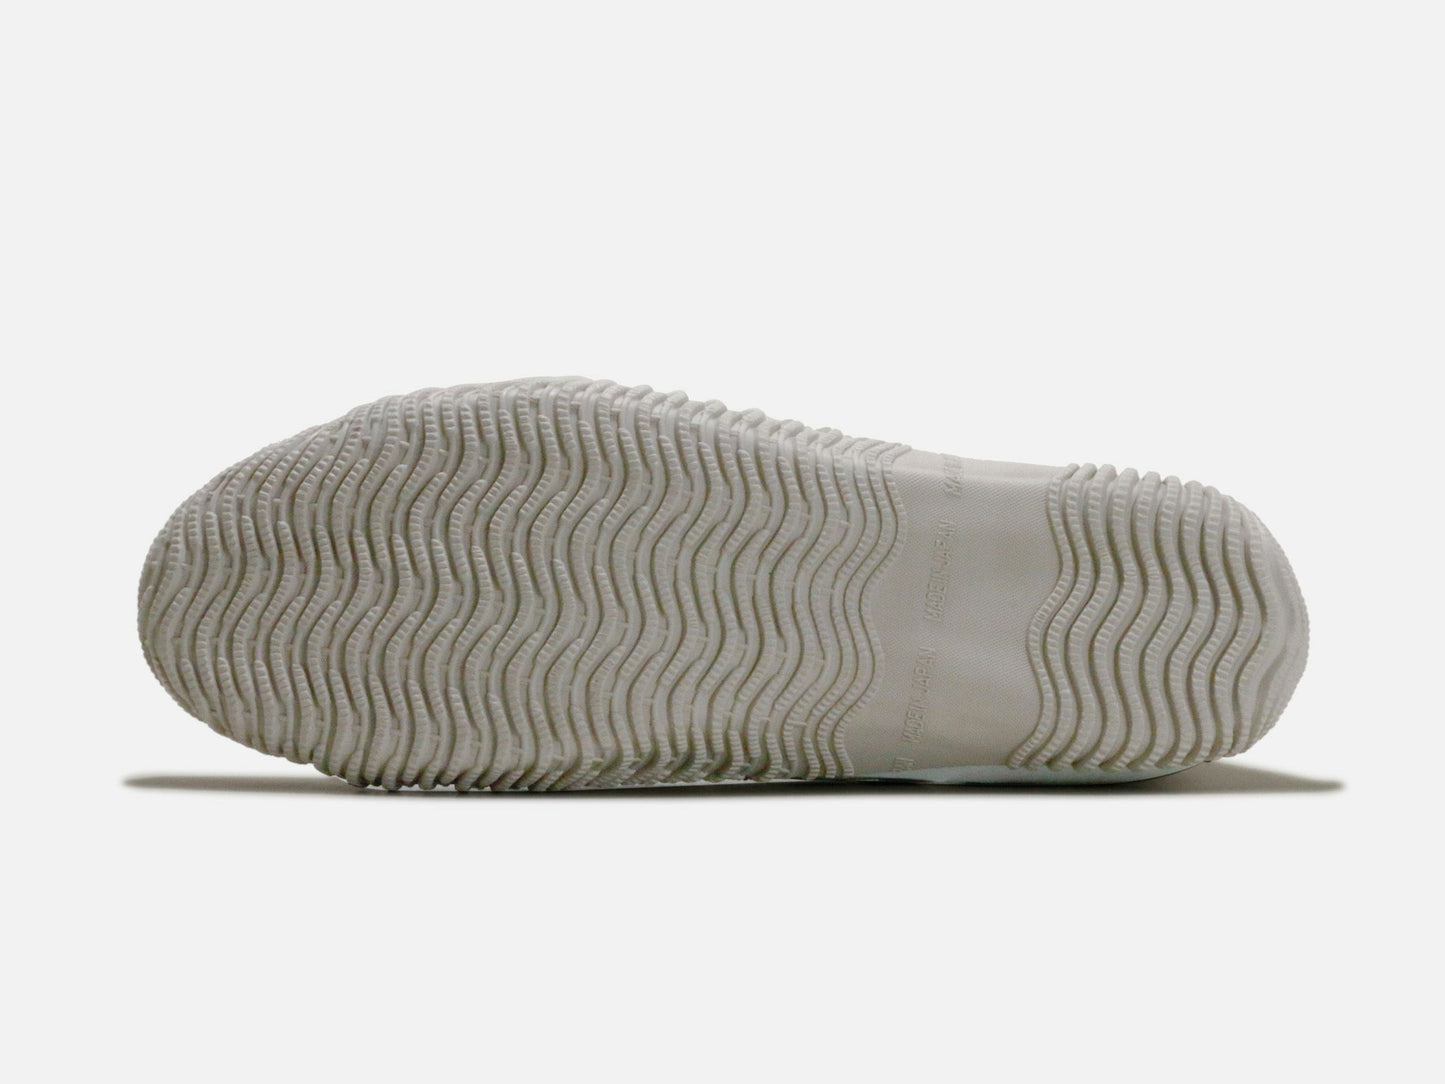 SPINGLE MOVEのスニーカー「SPM-443 Ivory」の靴底の商品画像